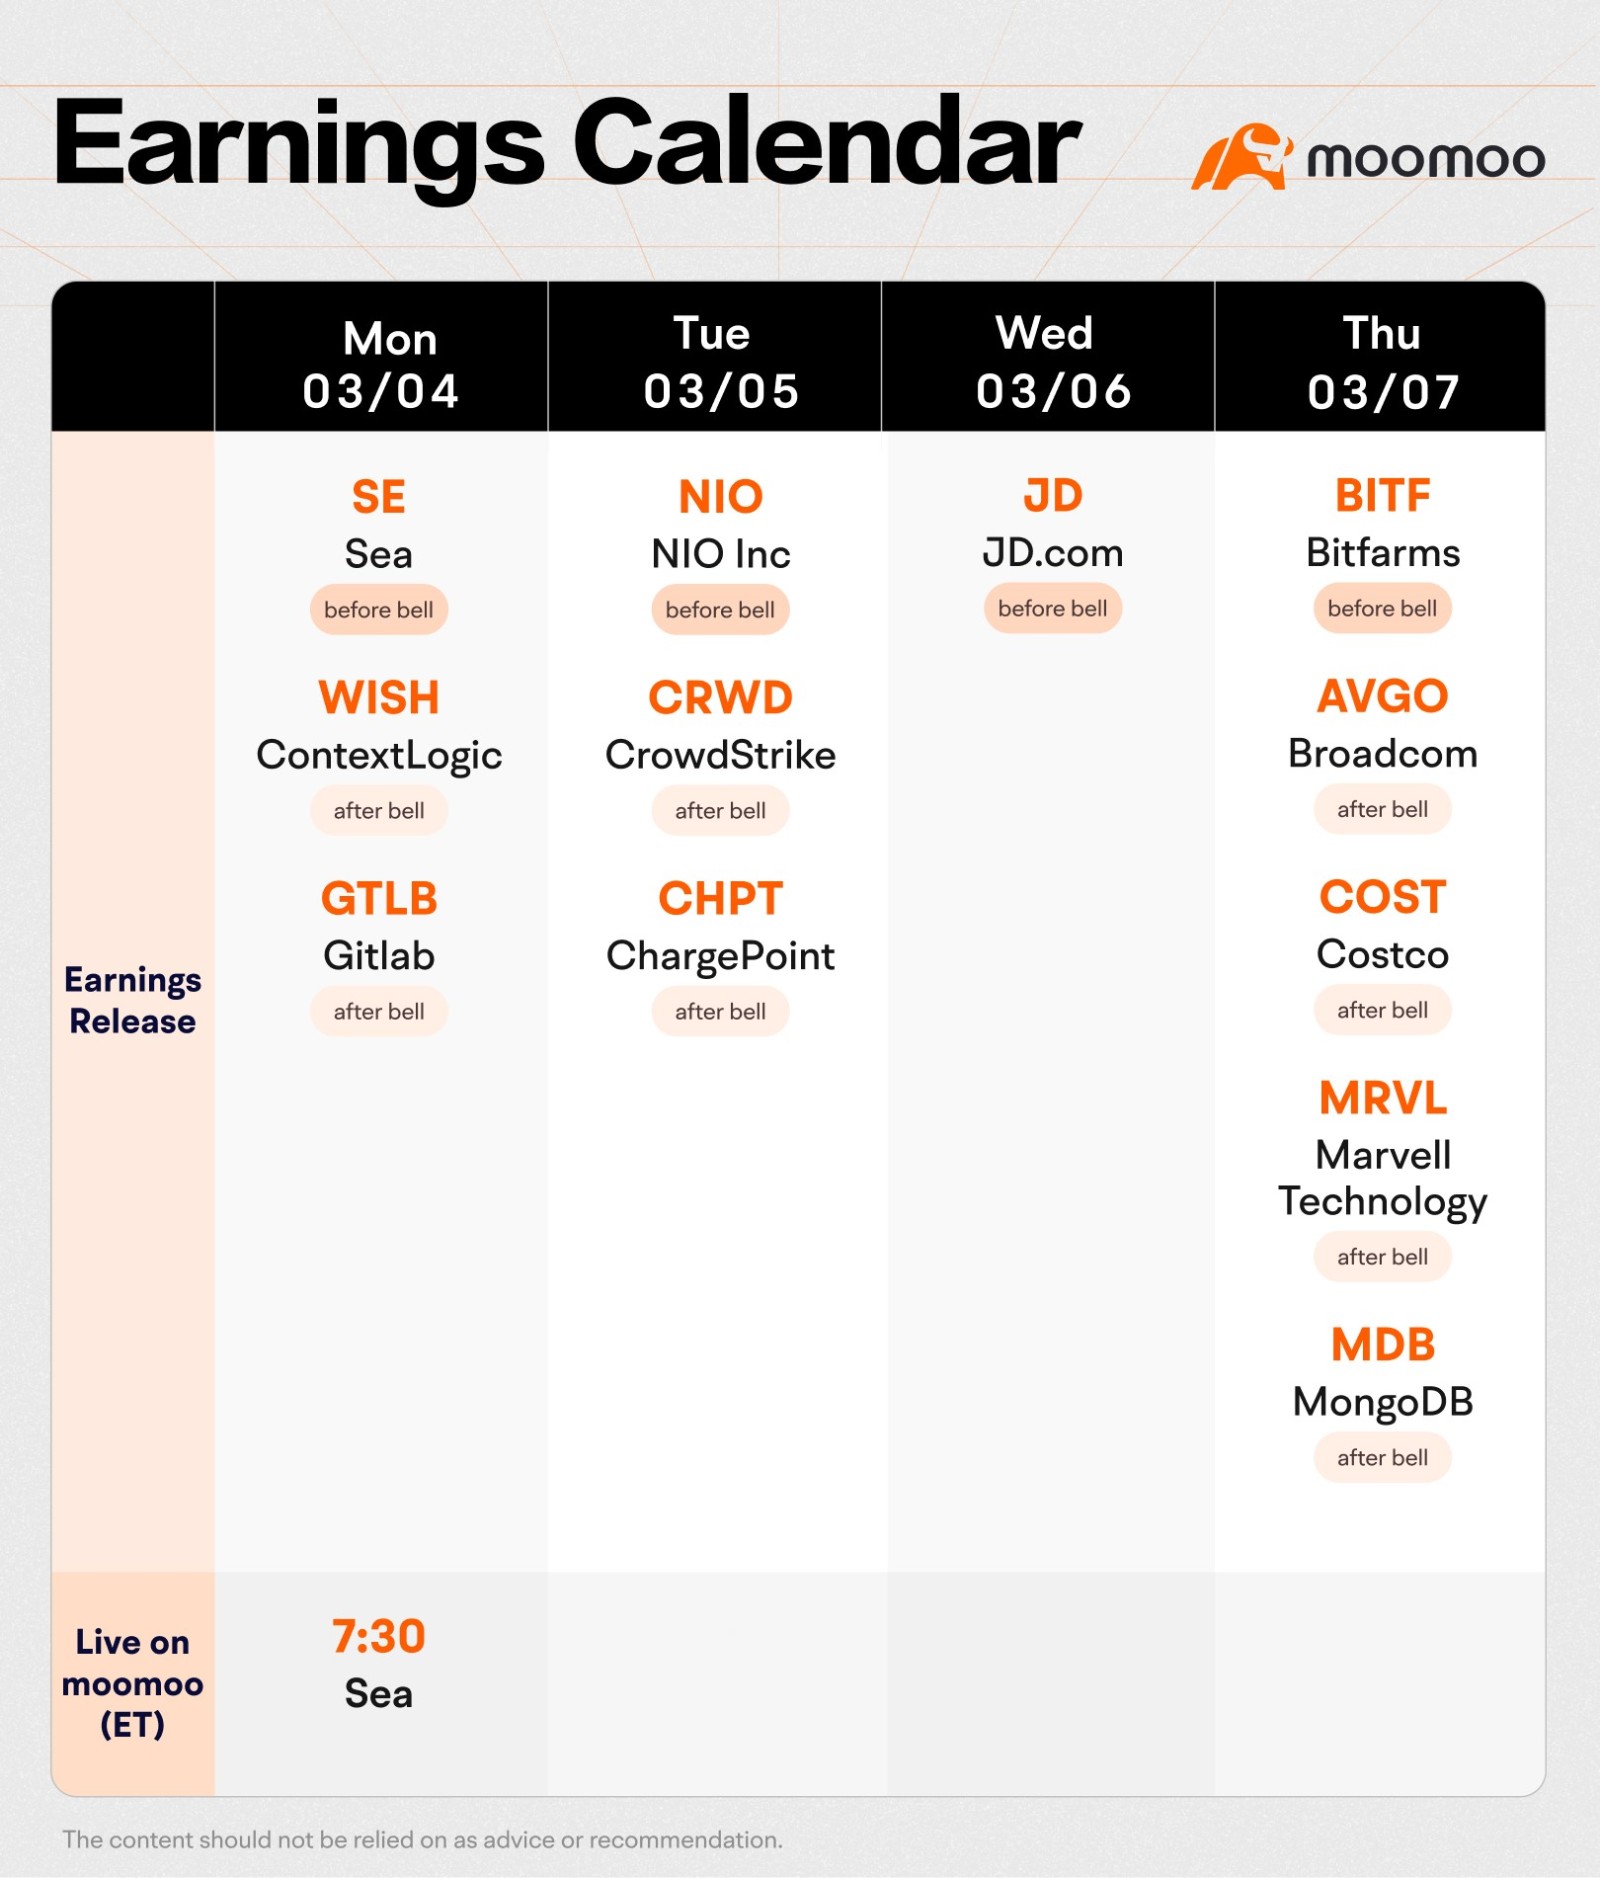 moomooの新鮮な決算カレンダーをチェックして、あなたの週を始めましょう！